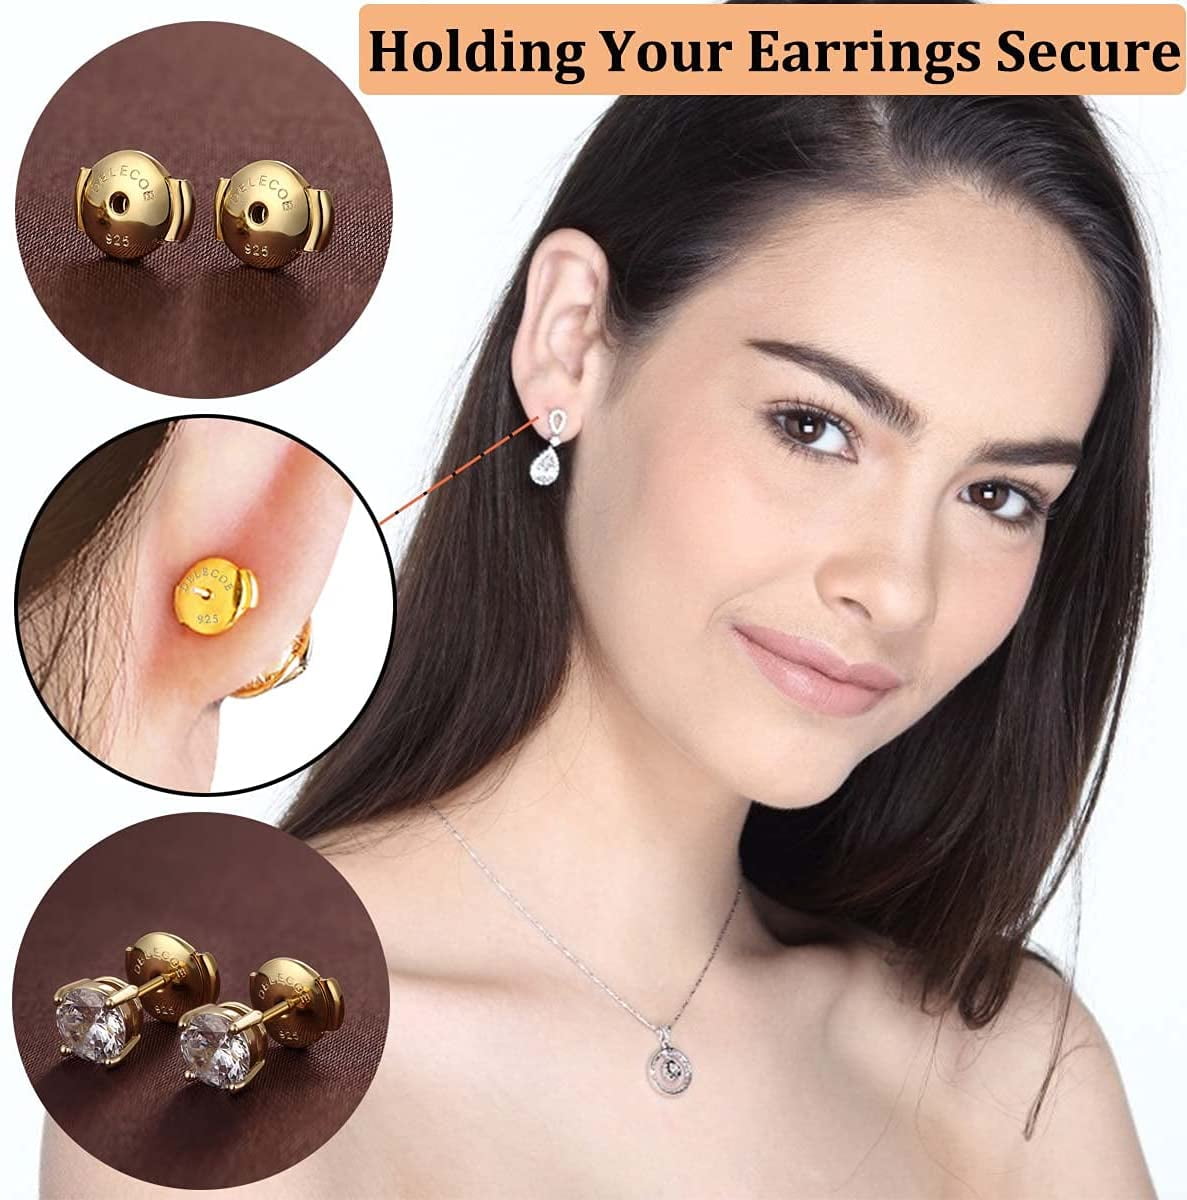  2-Pair Locking Earring Backs For Diamond Studs,925 Sterling  Silver Earring Backs For Studs Secure,14K Plated White Gold Earring Backs  Can Safely Hypoallergenic Earring Backs